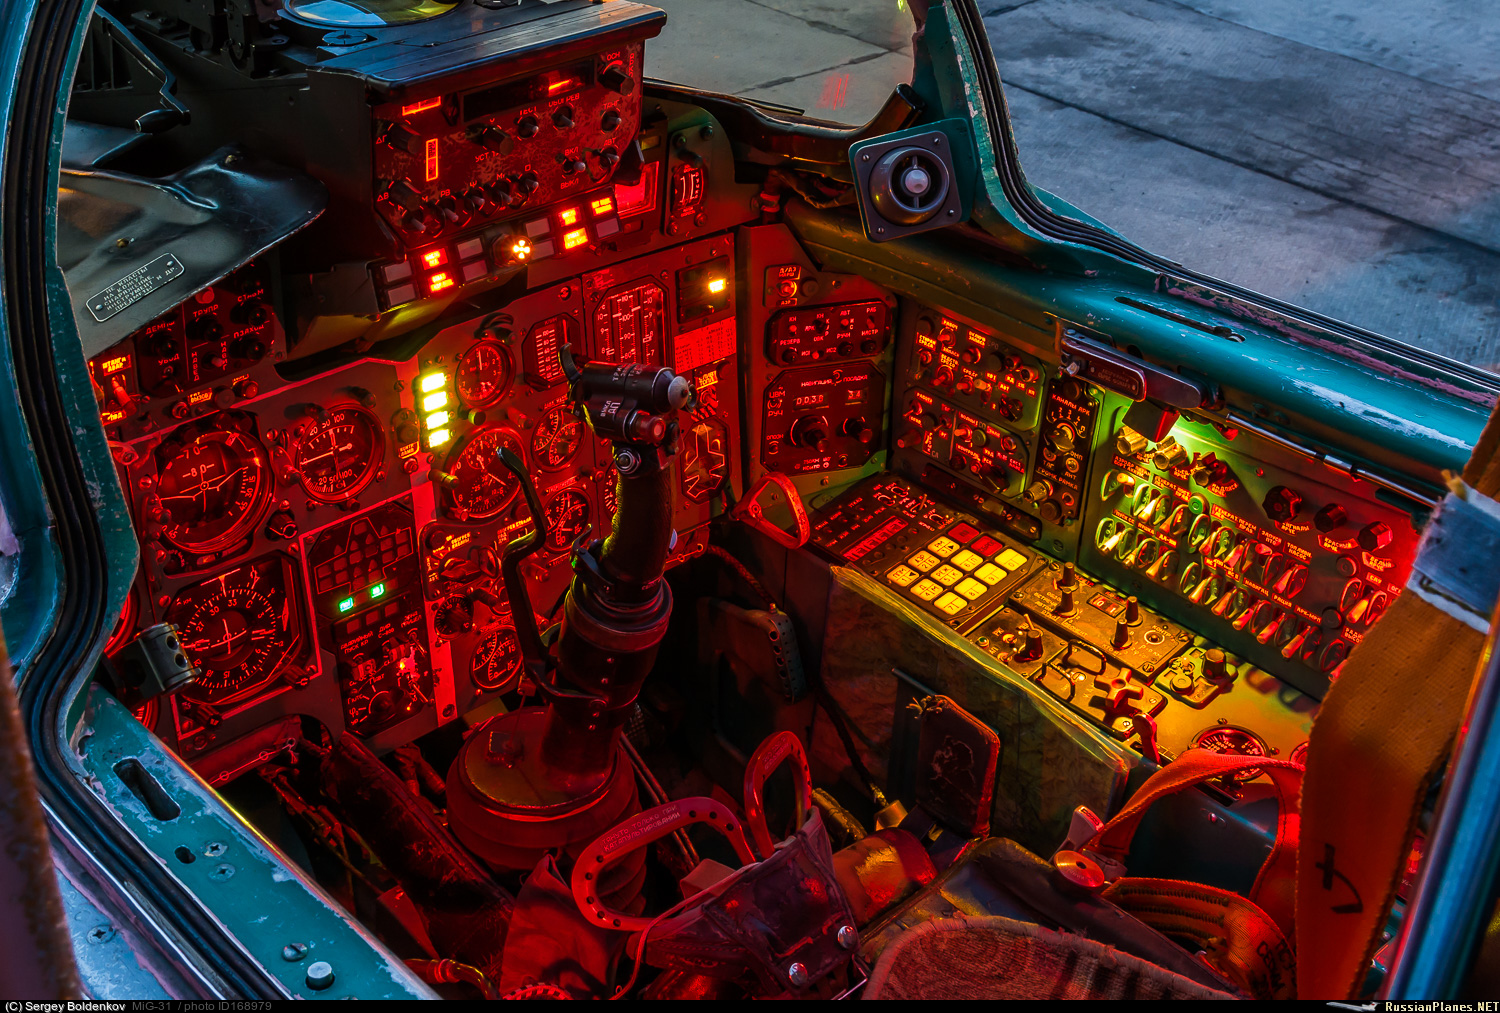 mig 31 cockpit